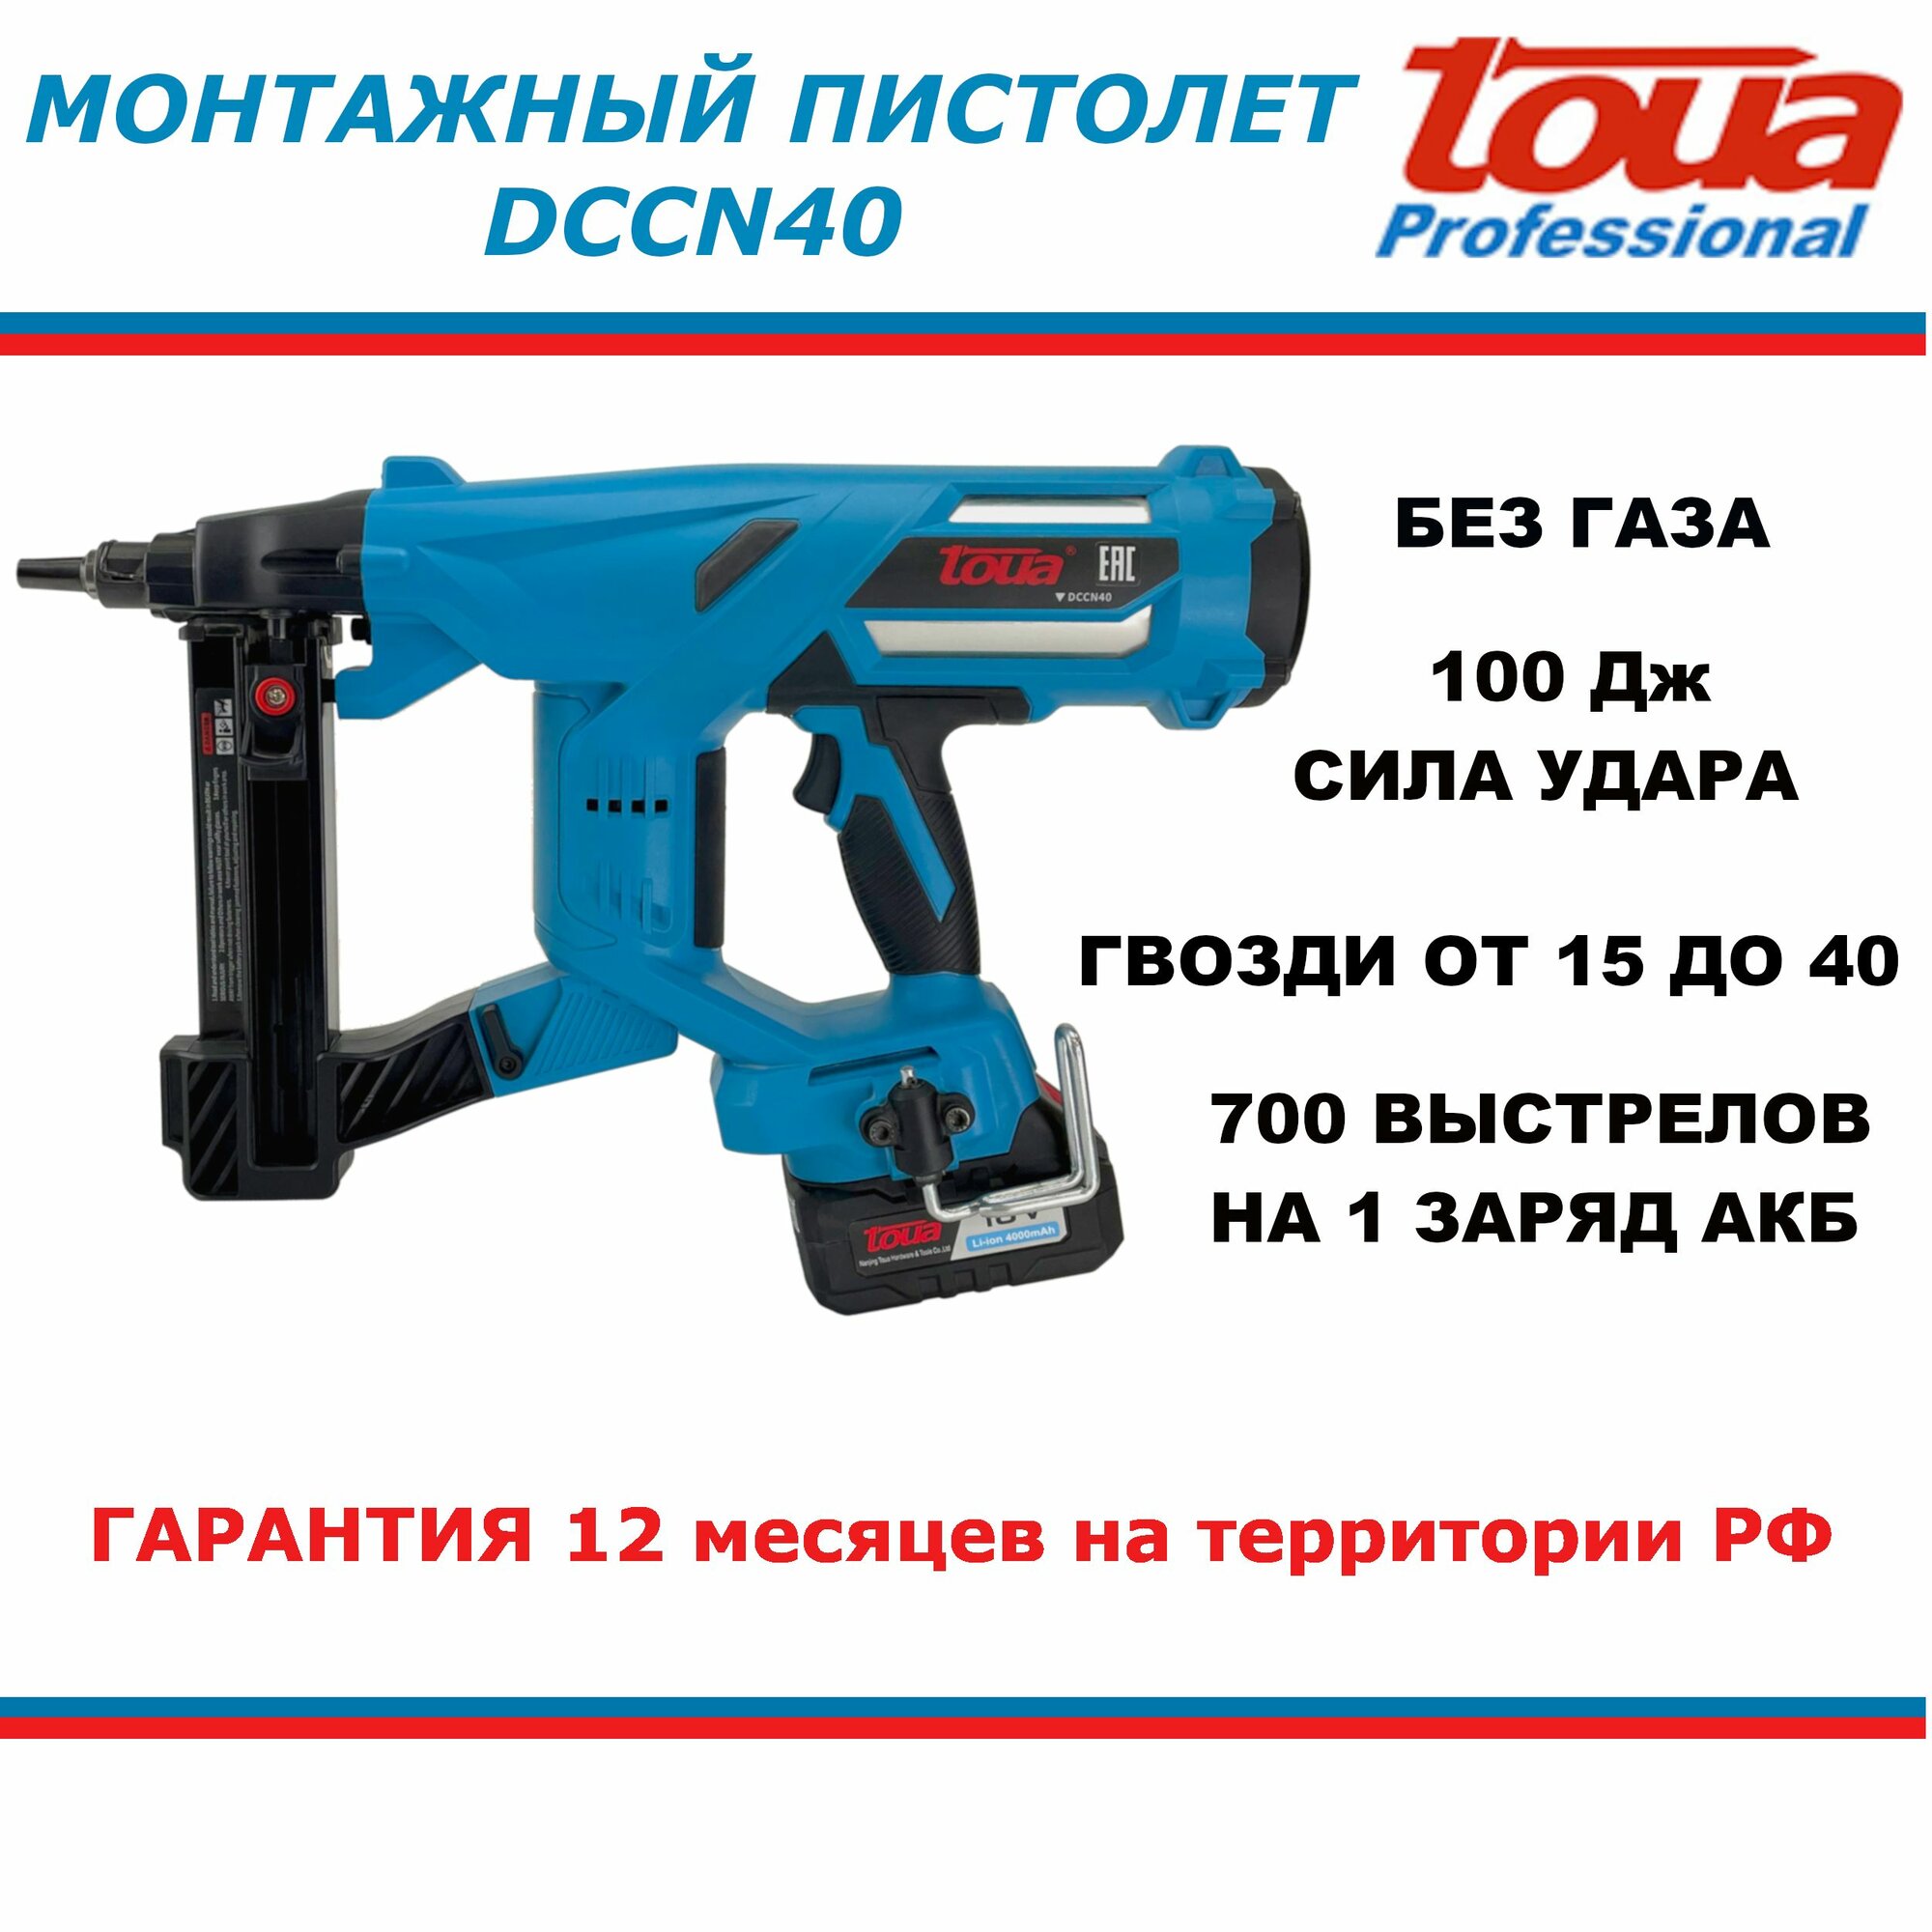 Аккумуляторный монтажный пистолет Toua DCCN40 гарантия РФ